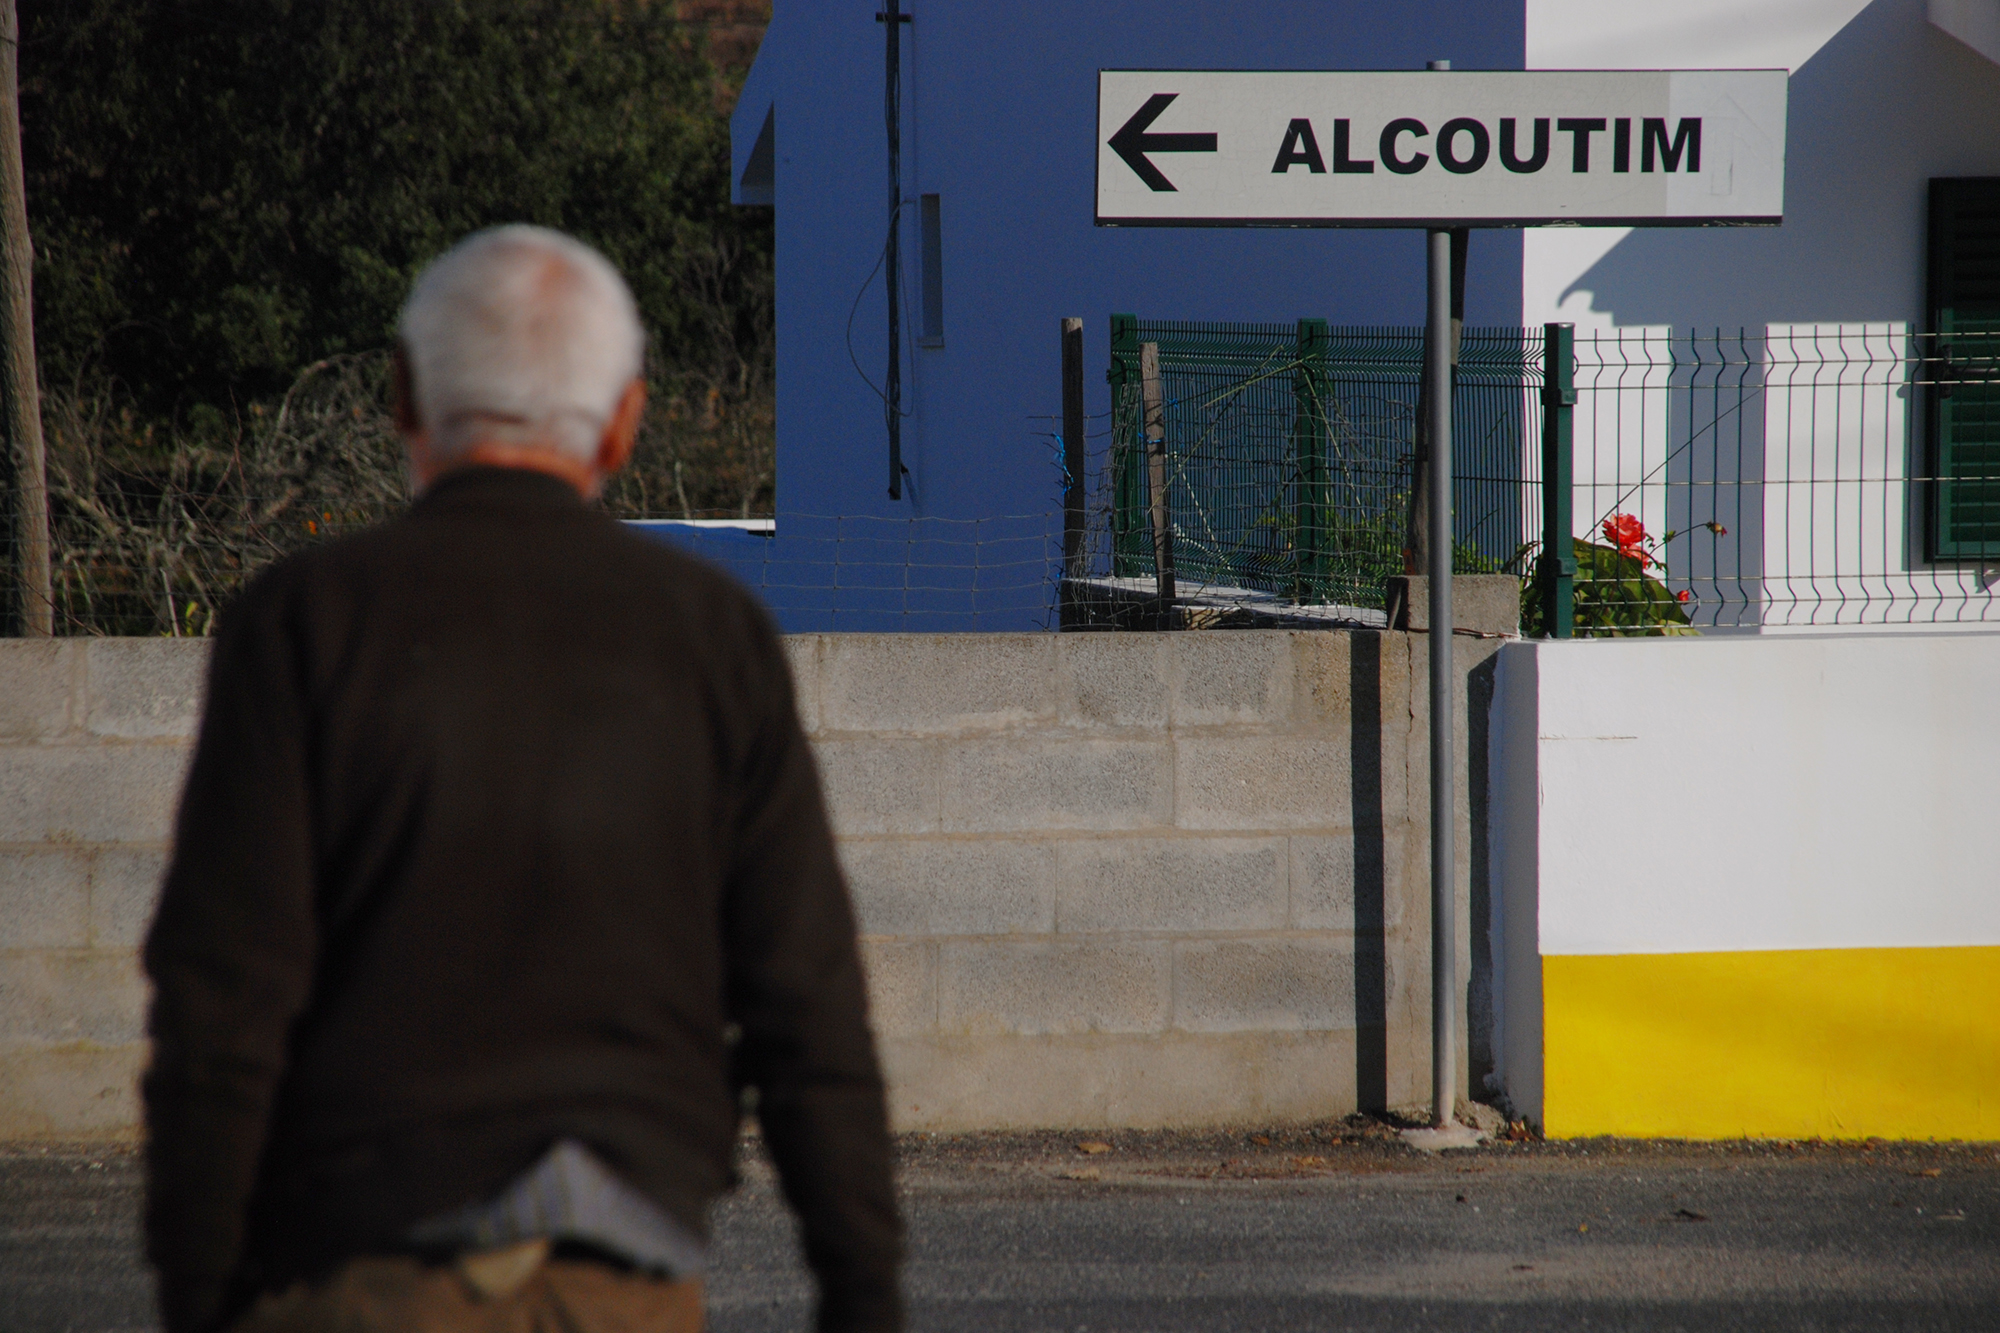 Segundo os Censos de 2011, o concelho de Alcoutim tem cerca de 2900 habitantes.